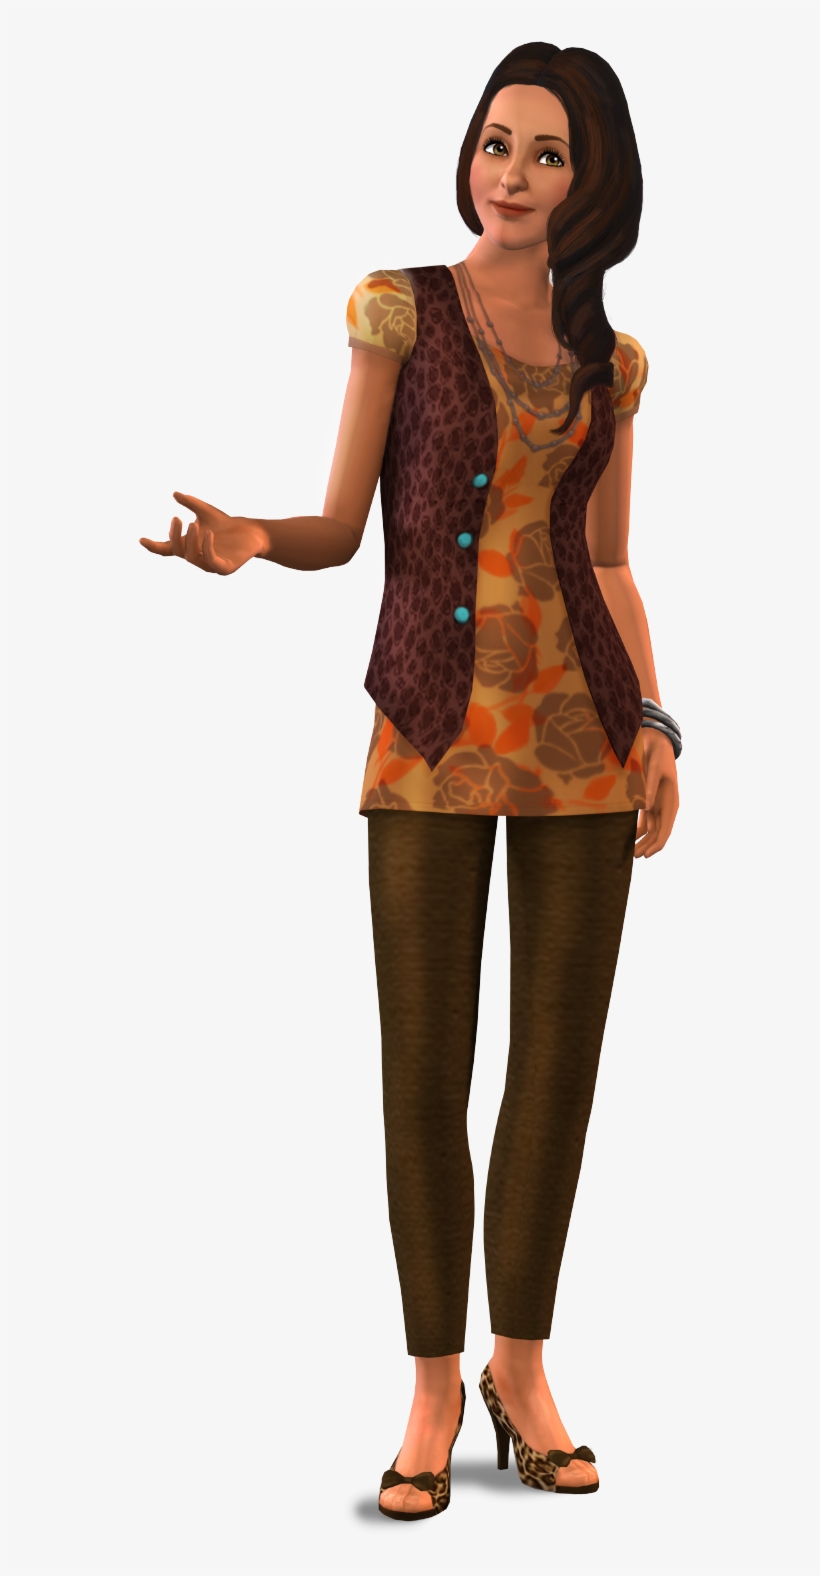 3 Png Download - Personaggi Png Di The Sims, transparent png #777689